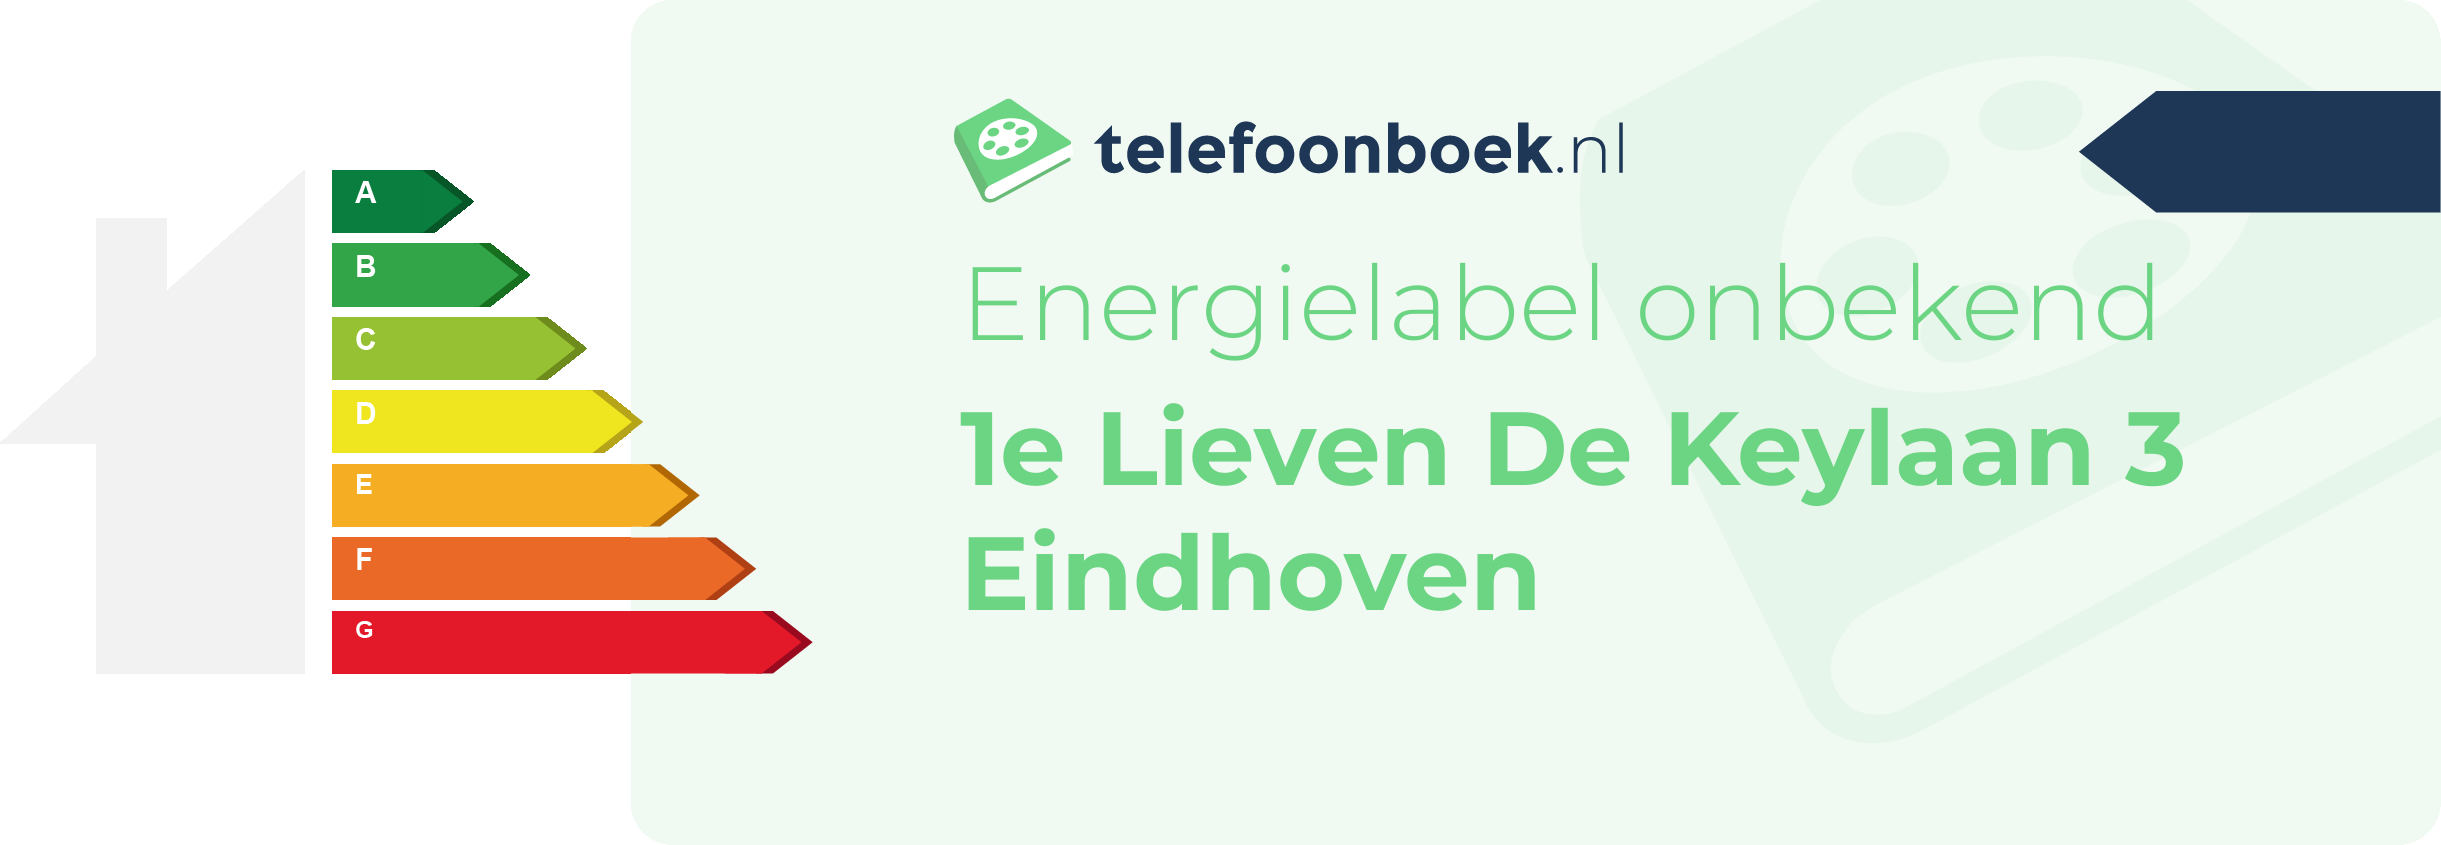 Energielabel 1e Lieven De Keylaan 3 Eindhoven